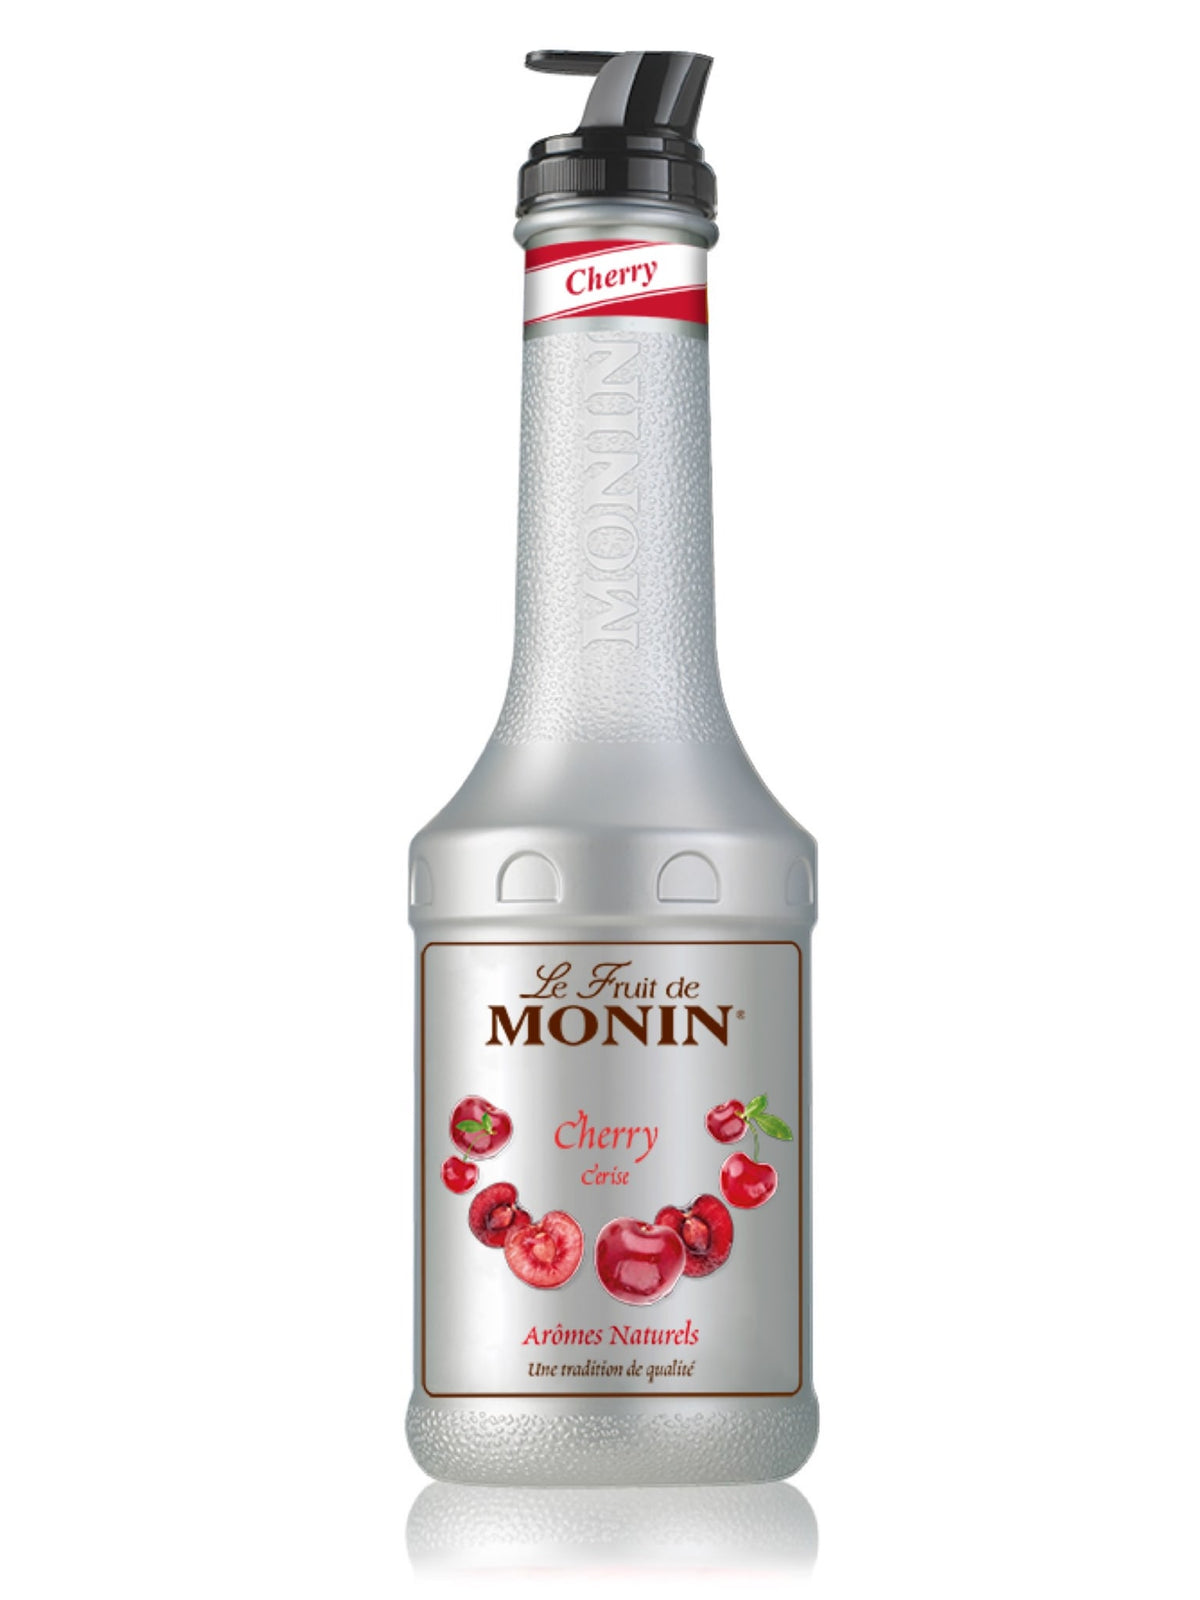 Tilføj en intens og frugtagtig smag til dine drinks og desserter med Monin Kirsebær Pure